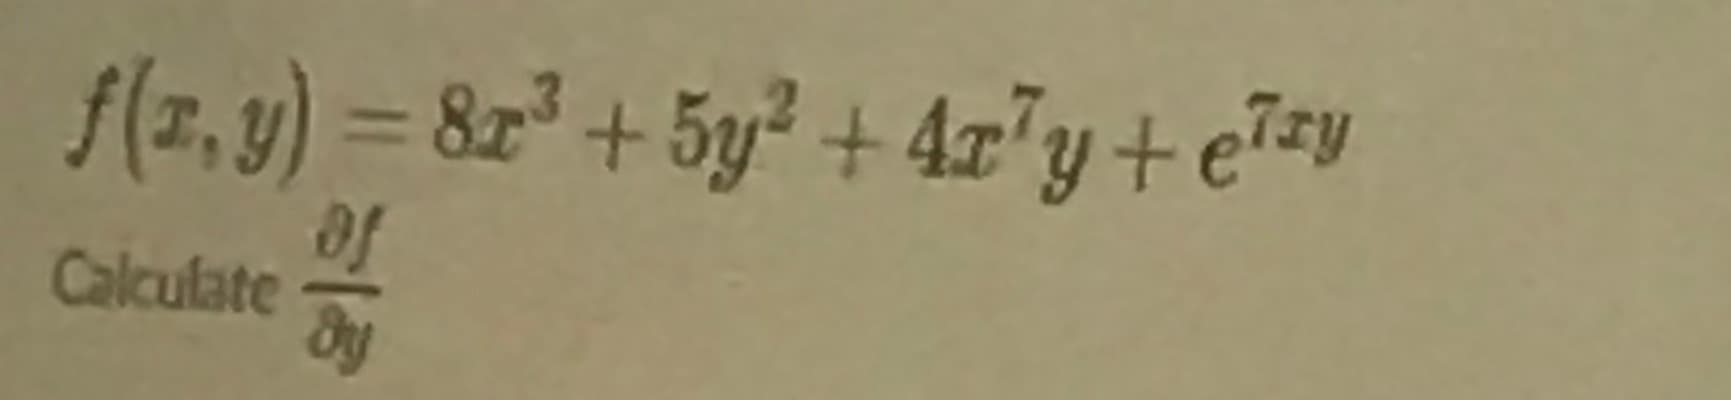 f(z, 9) = 82" + 5y² + 4z°y+ e7=y
of
Calculate
